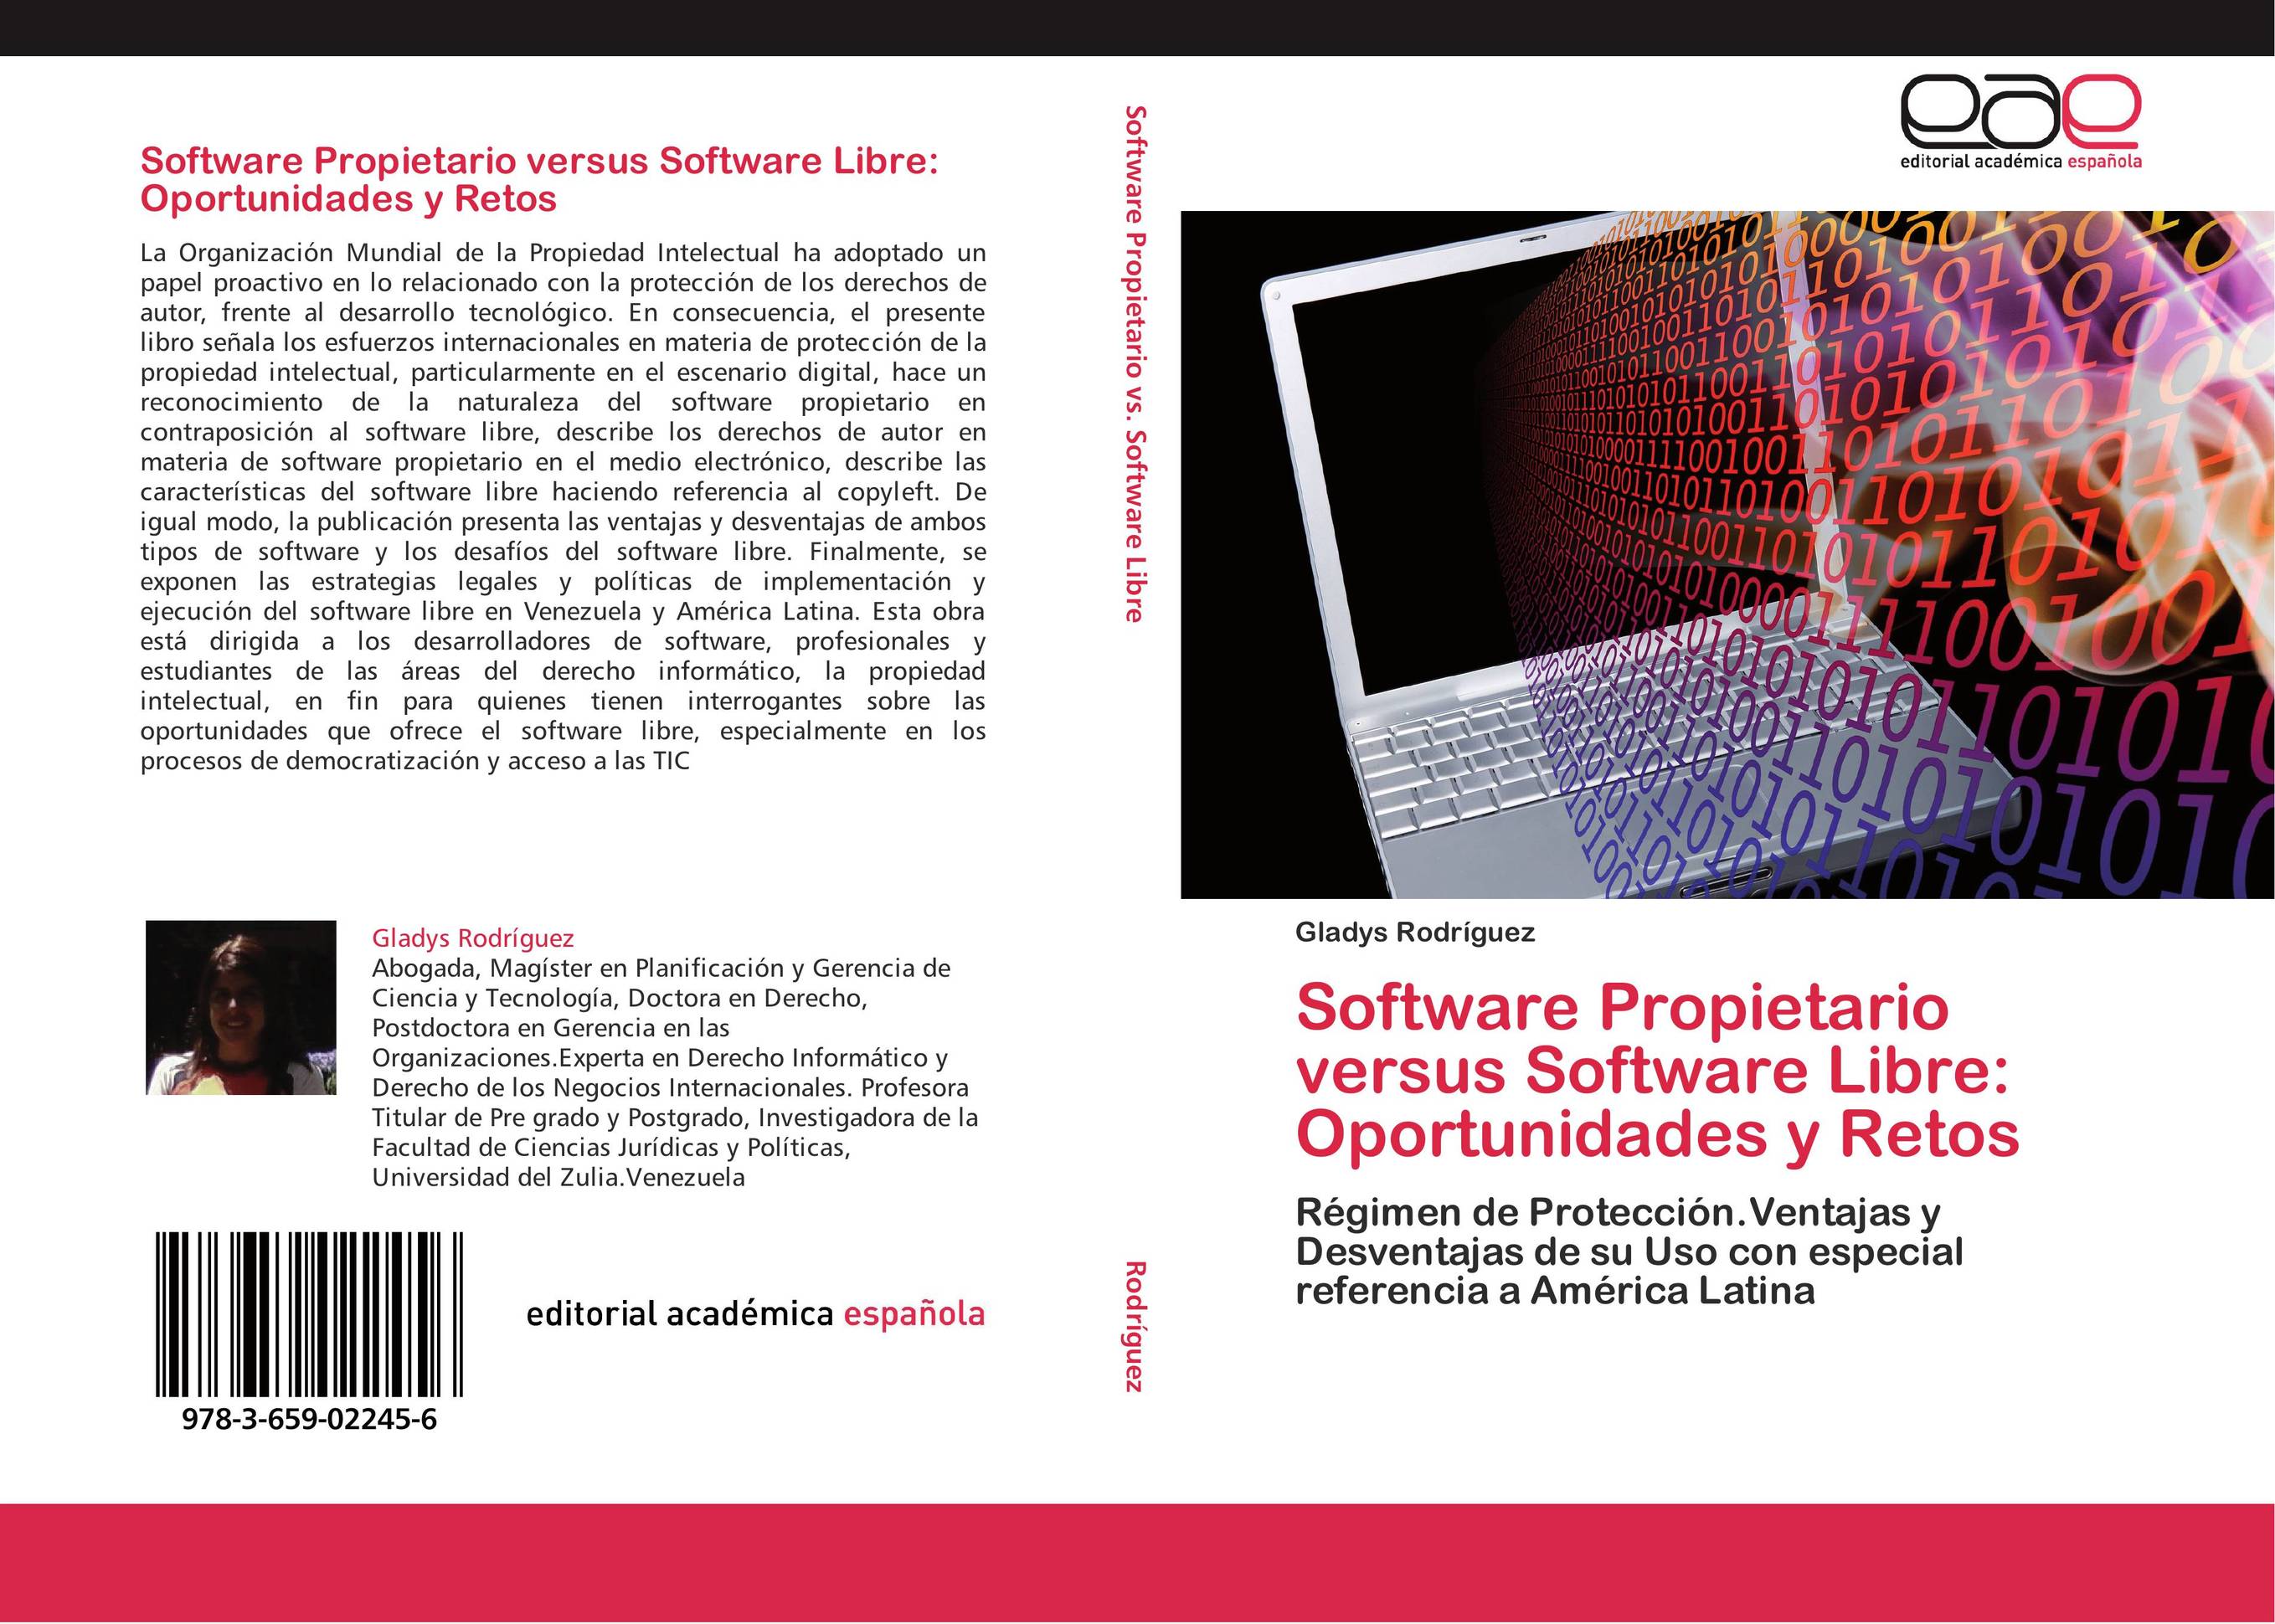 Software Propietario versus Software Libre: Oportunidades y Retos